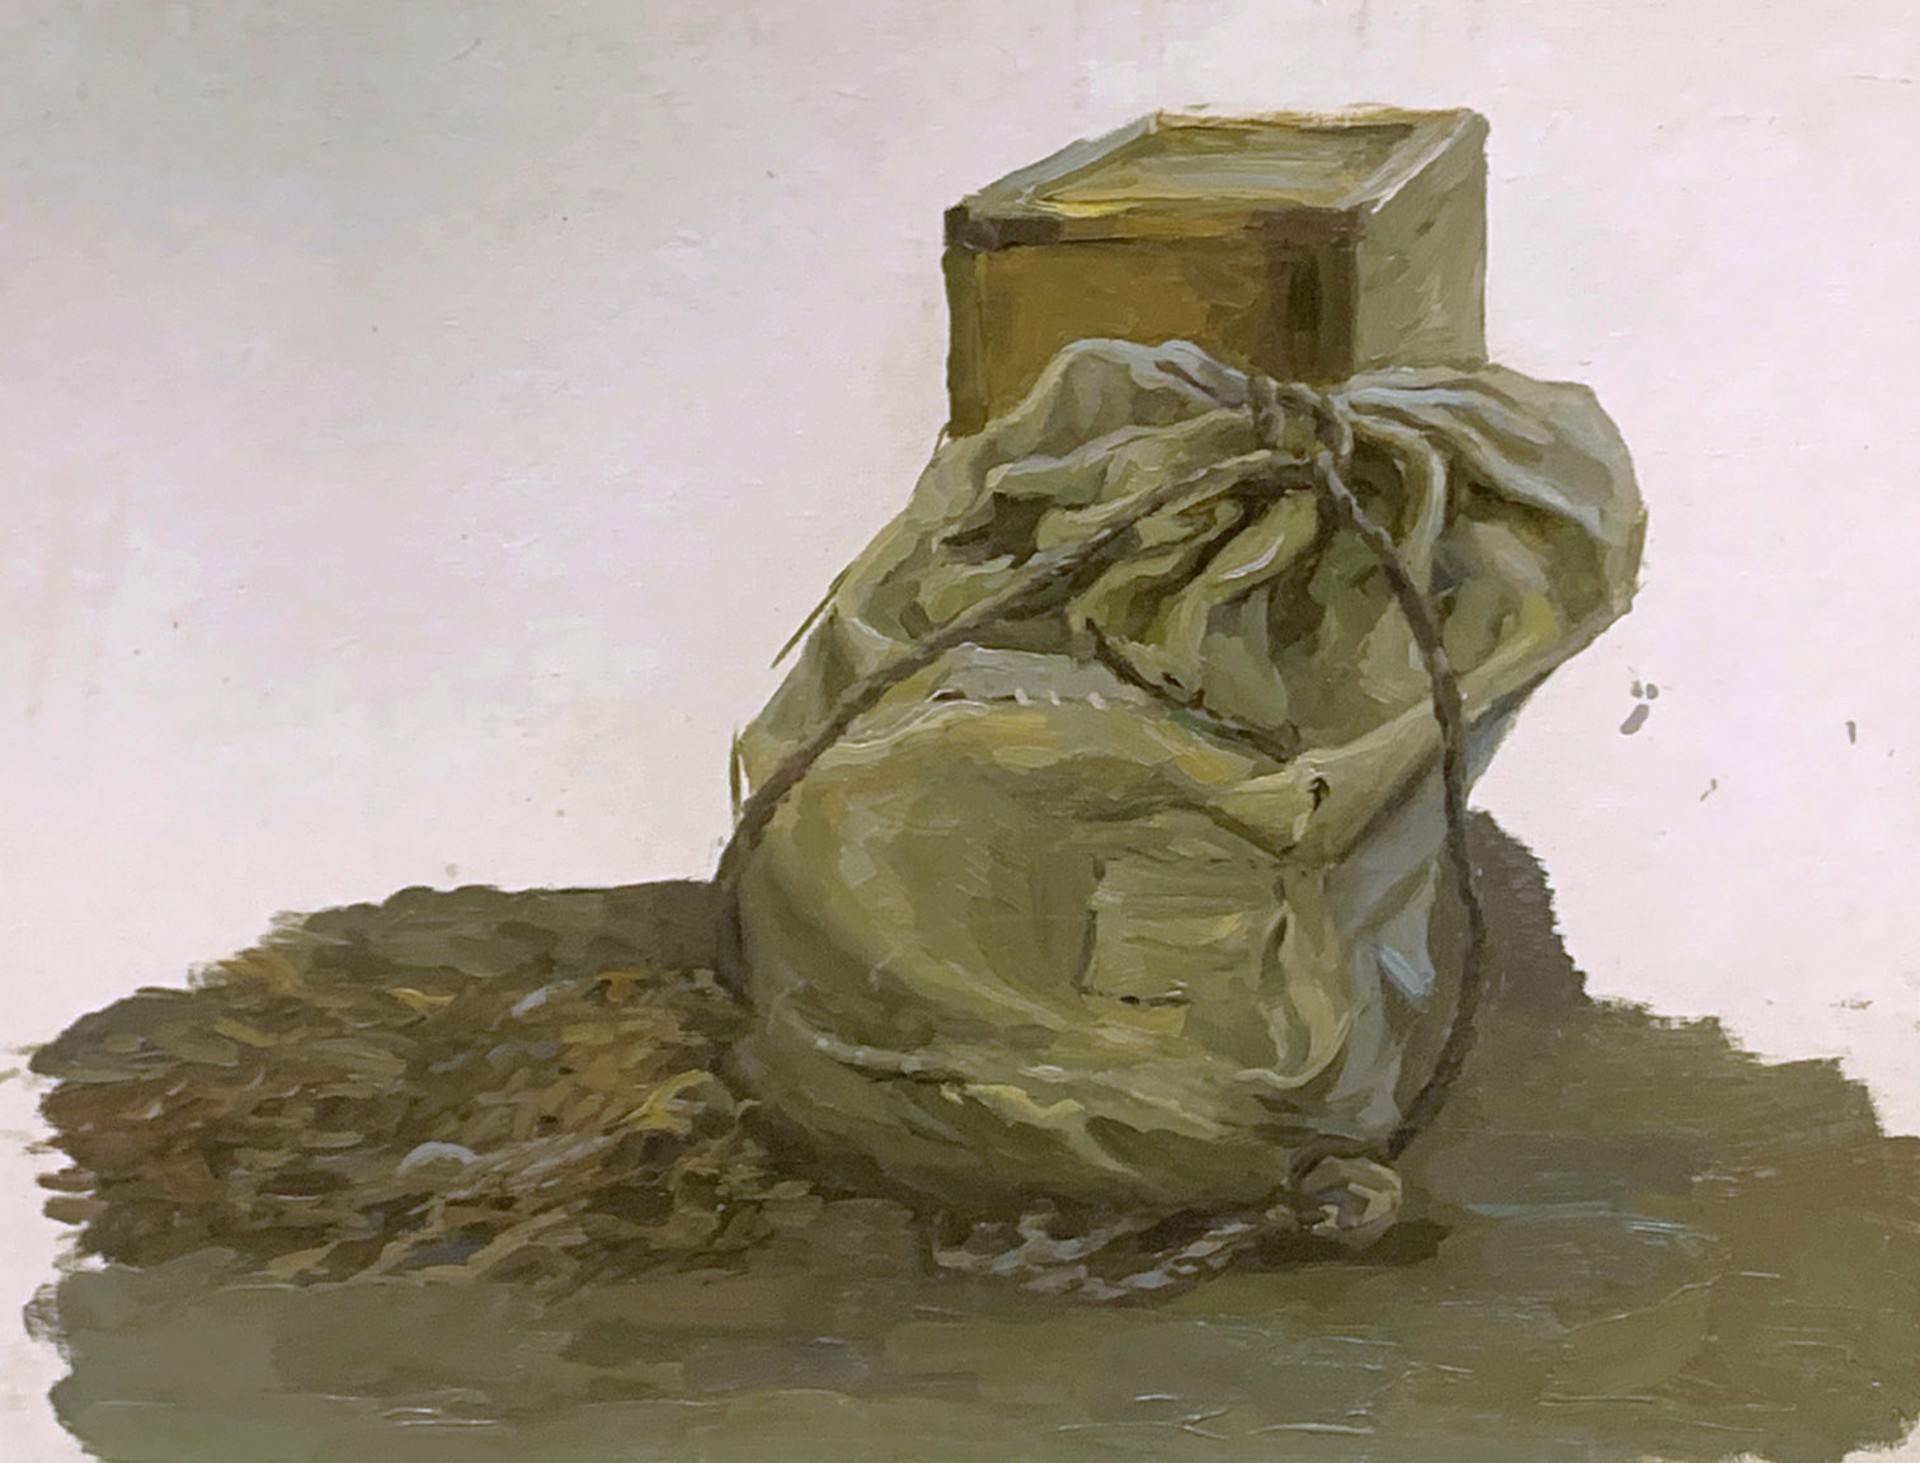 Sketch of a Bag by Aleksandr Rodionov